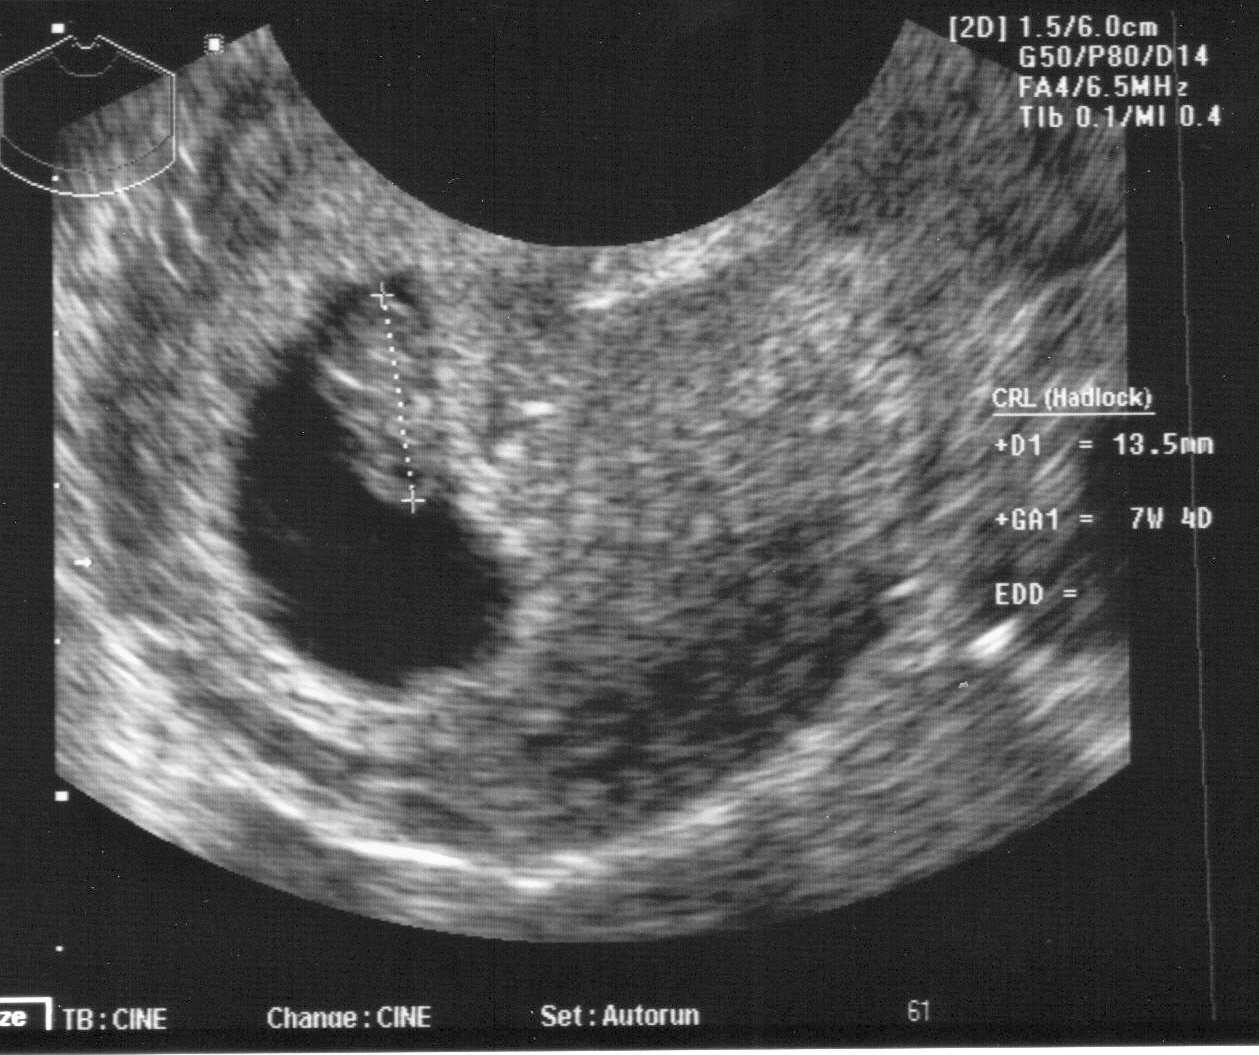 Как выглядит ребенок в 6 7 недель беременности фото